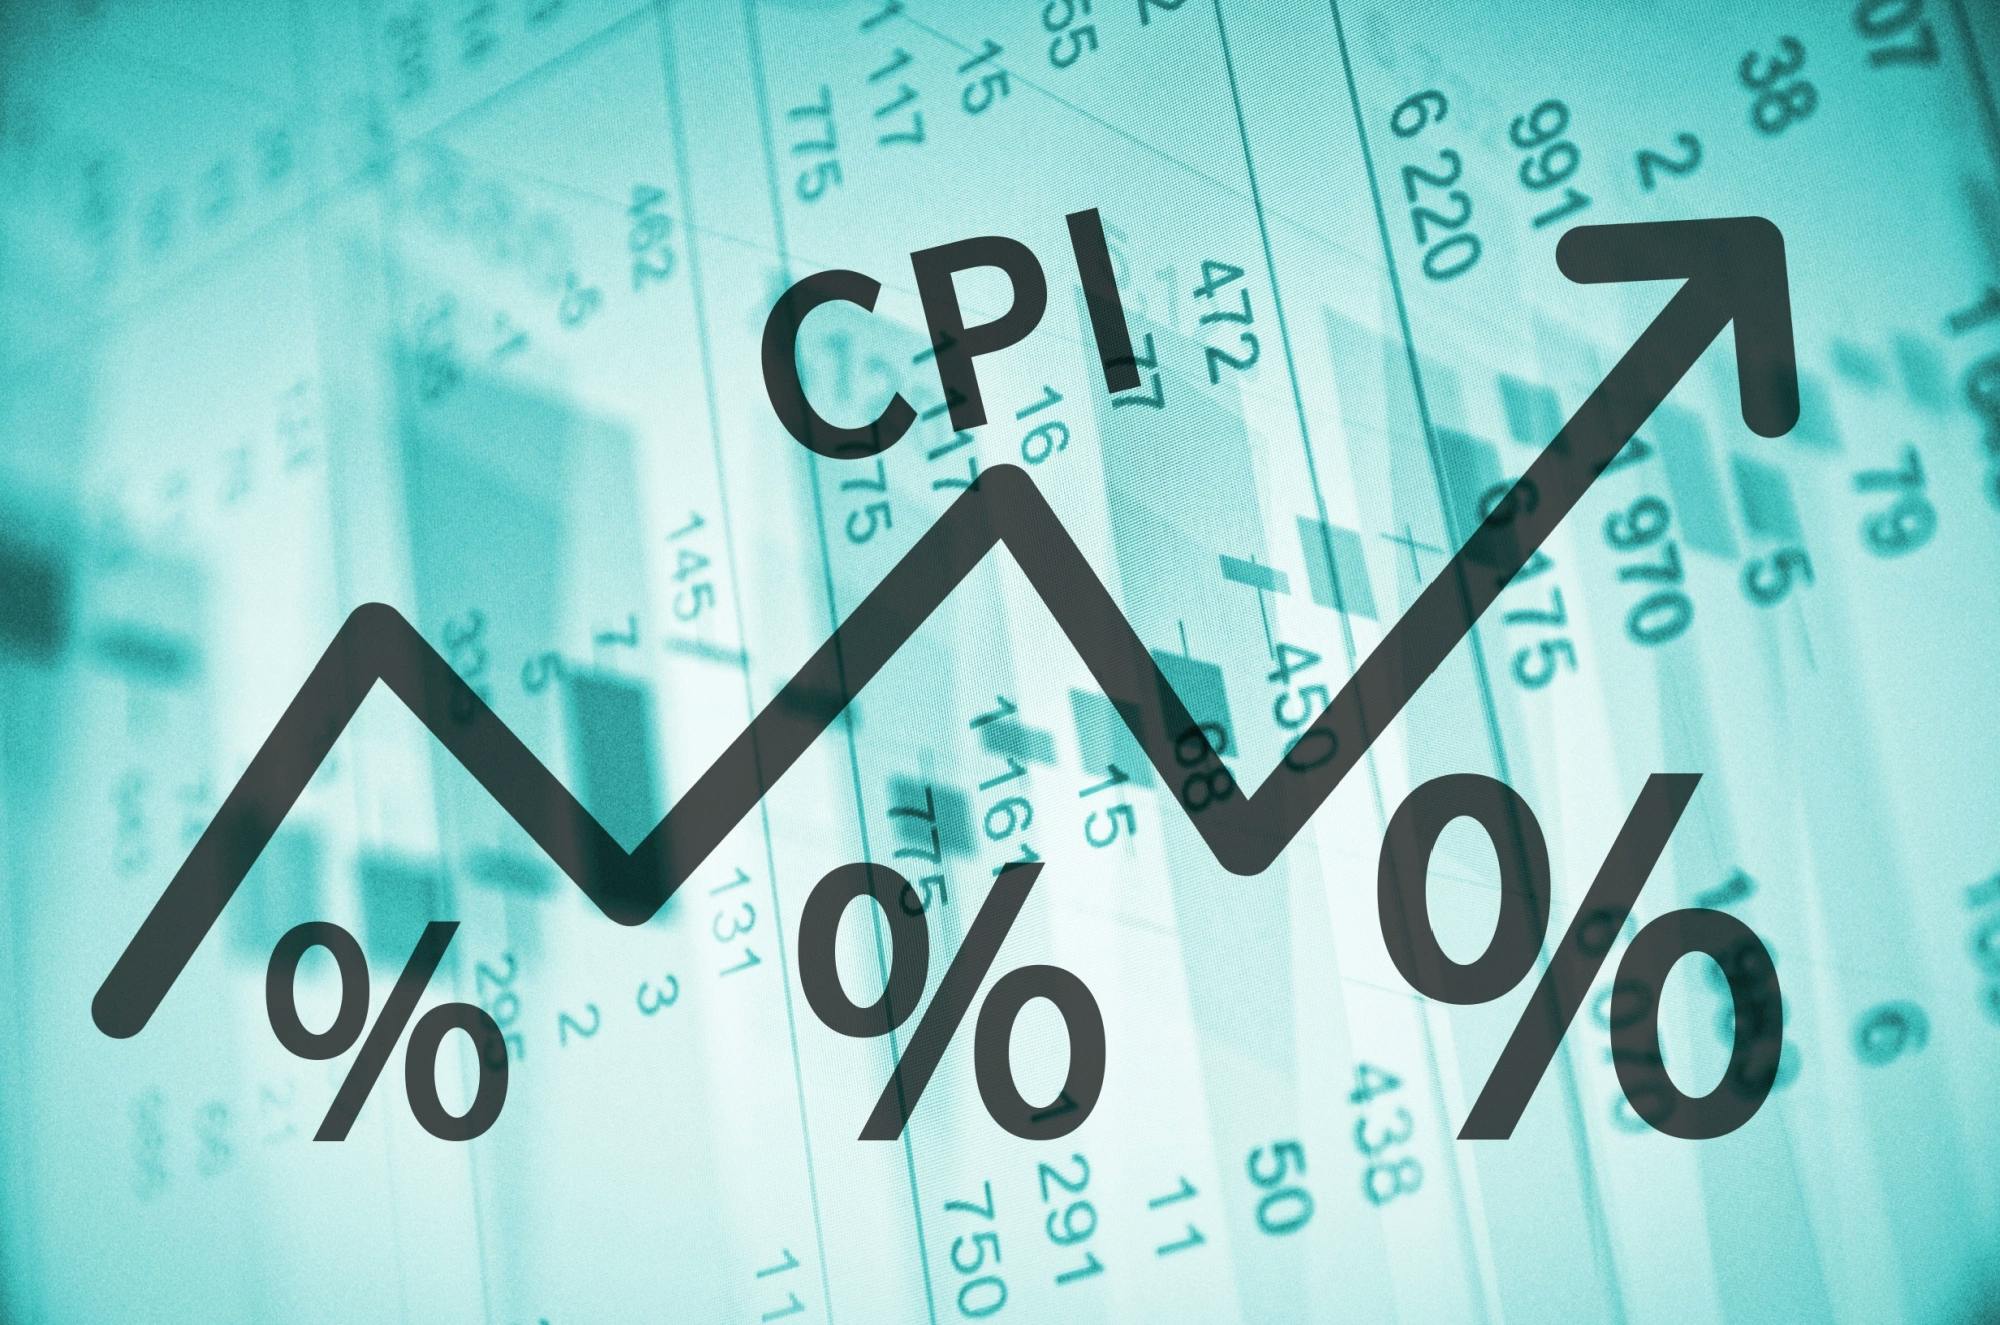 CPI acronym overlaying blue hued data sheet